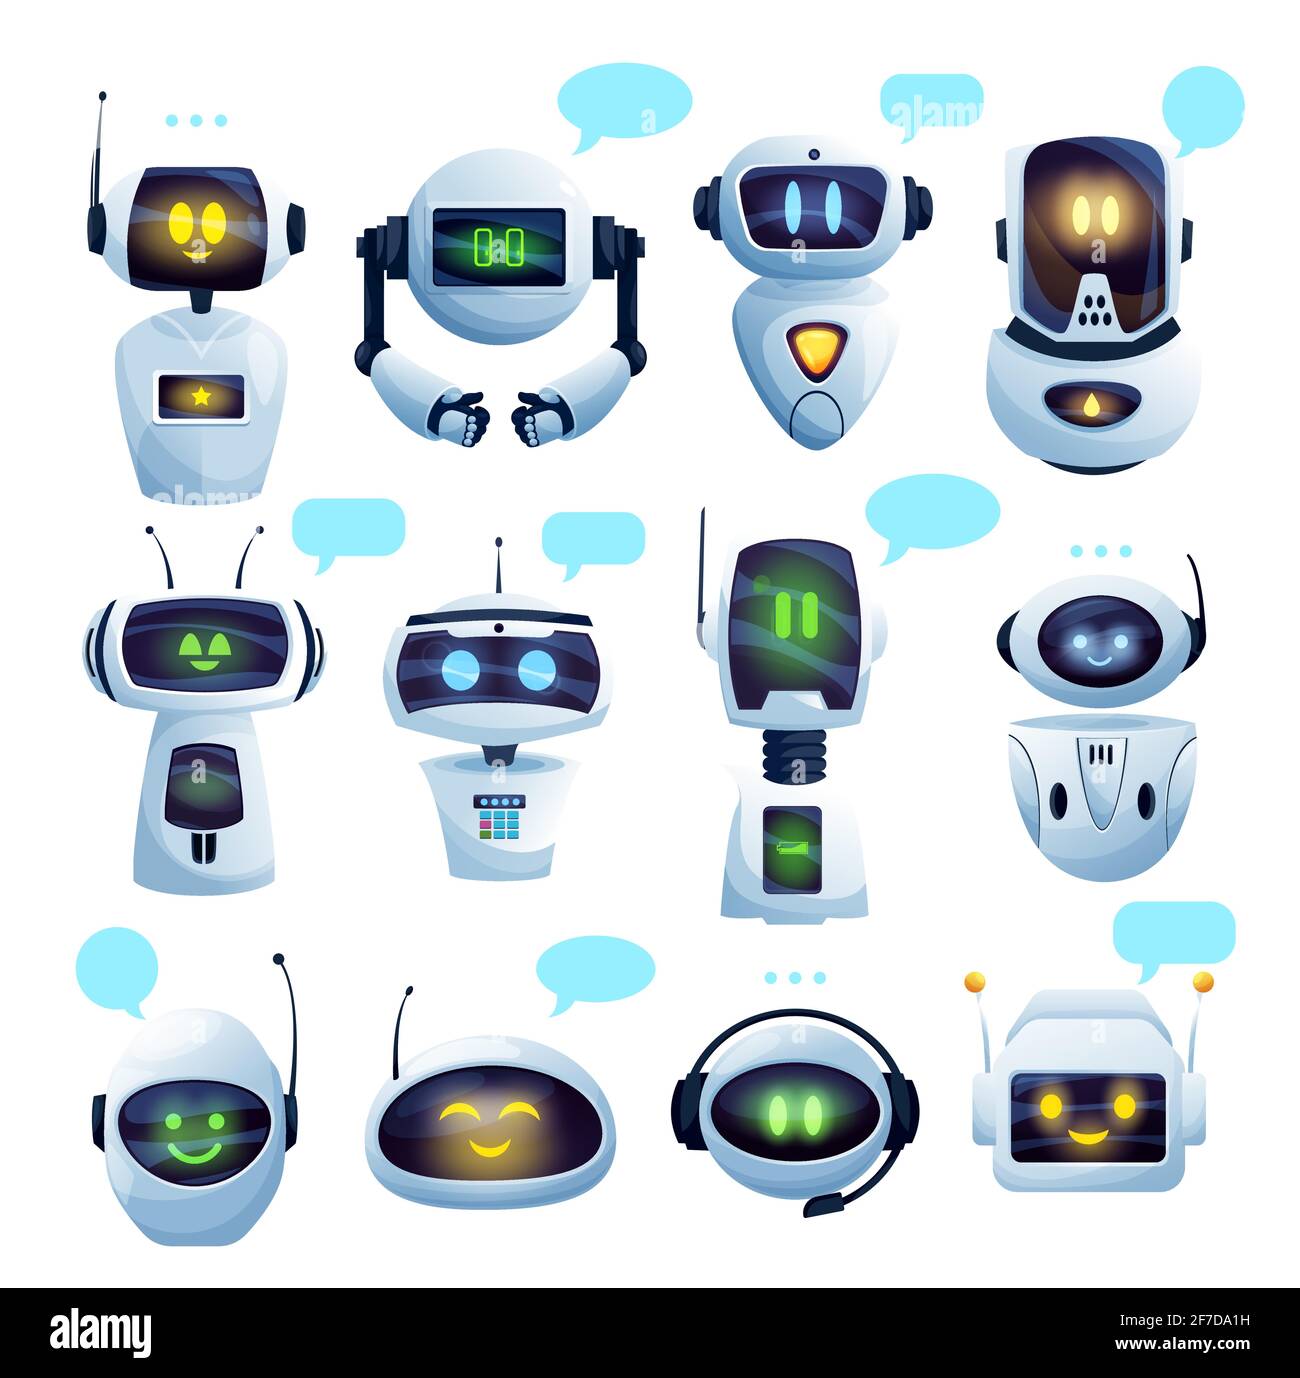 Personnages de dessin animé de robot chat ou de robot chat Image